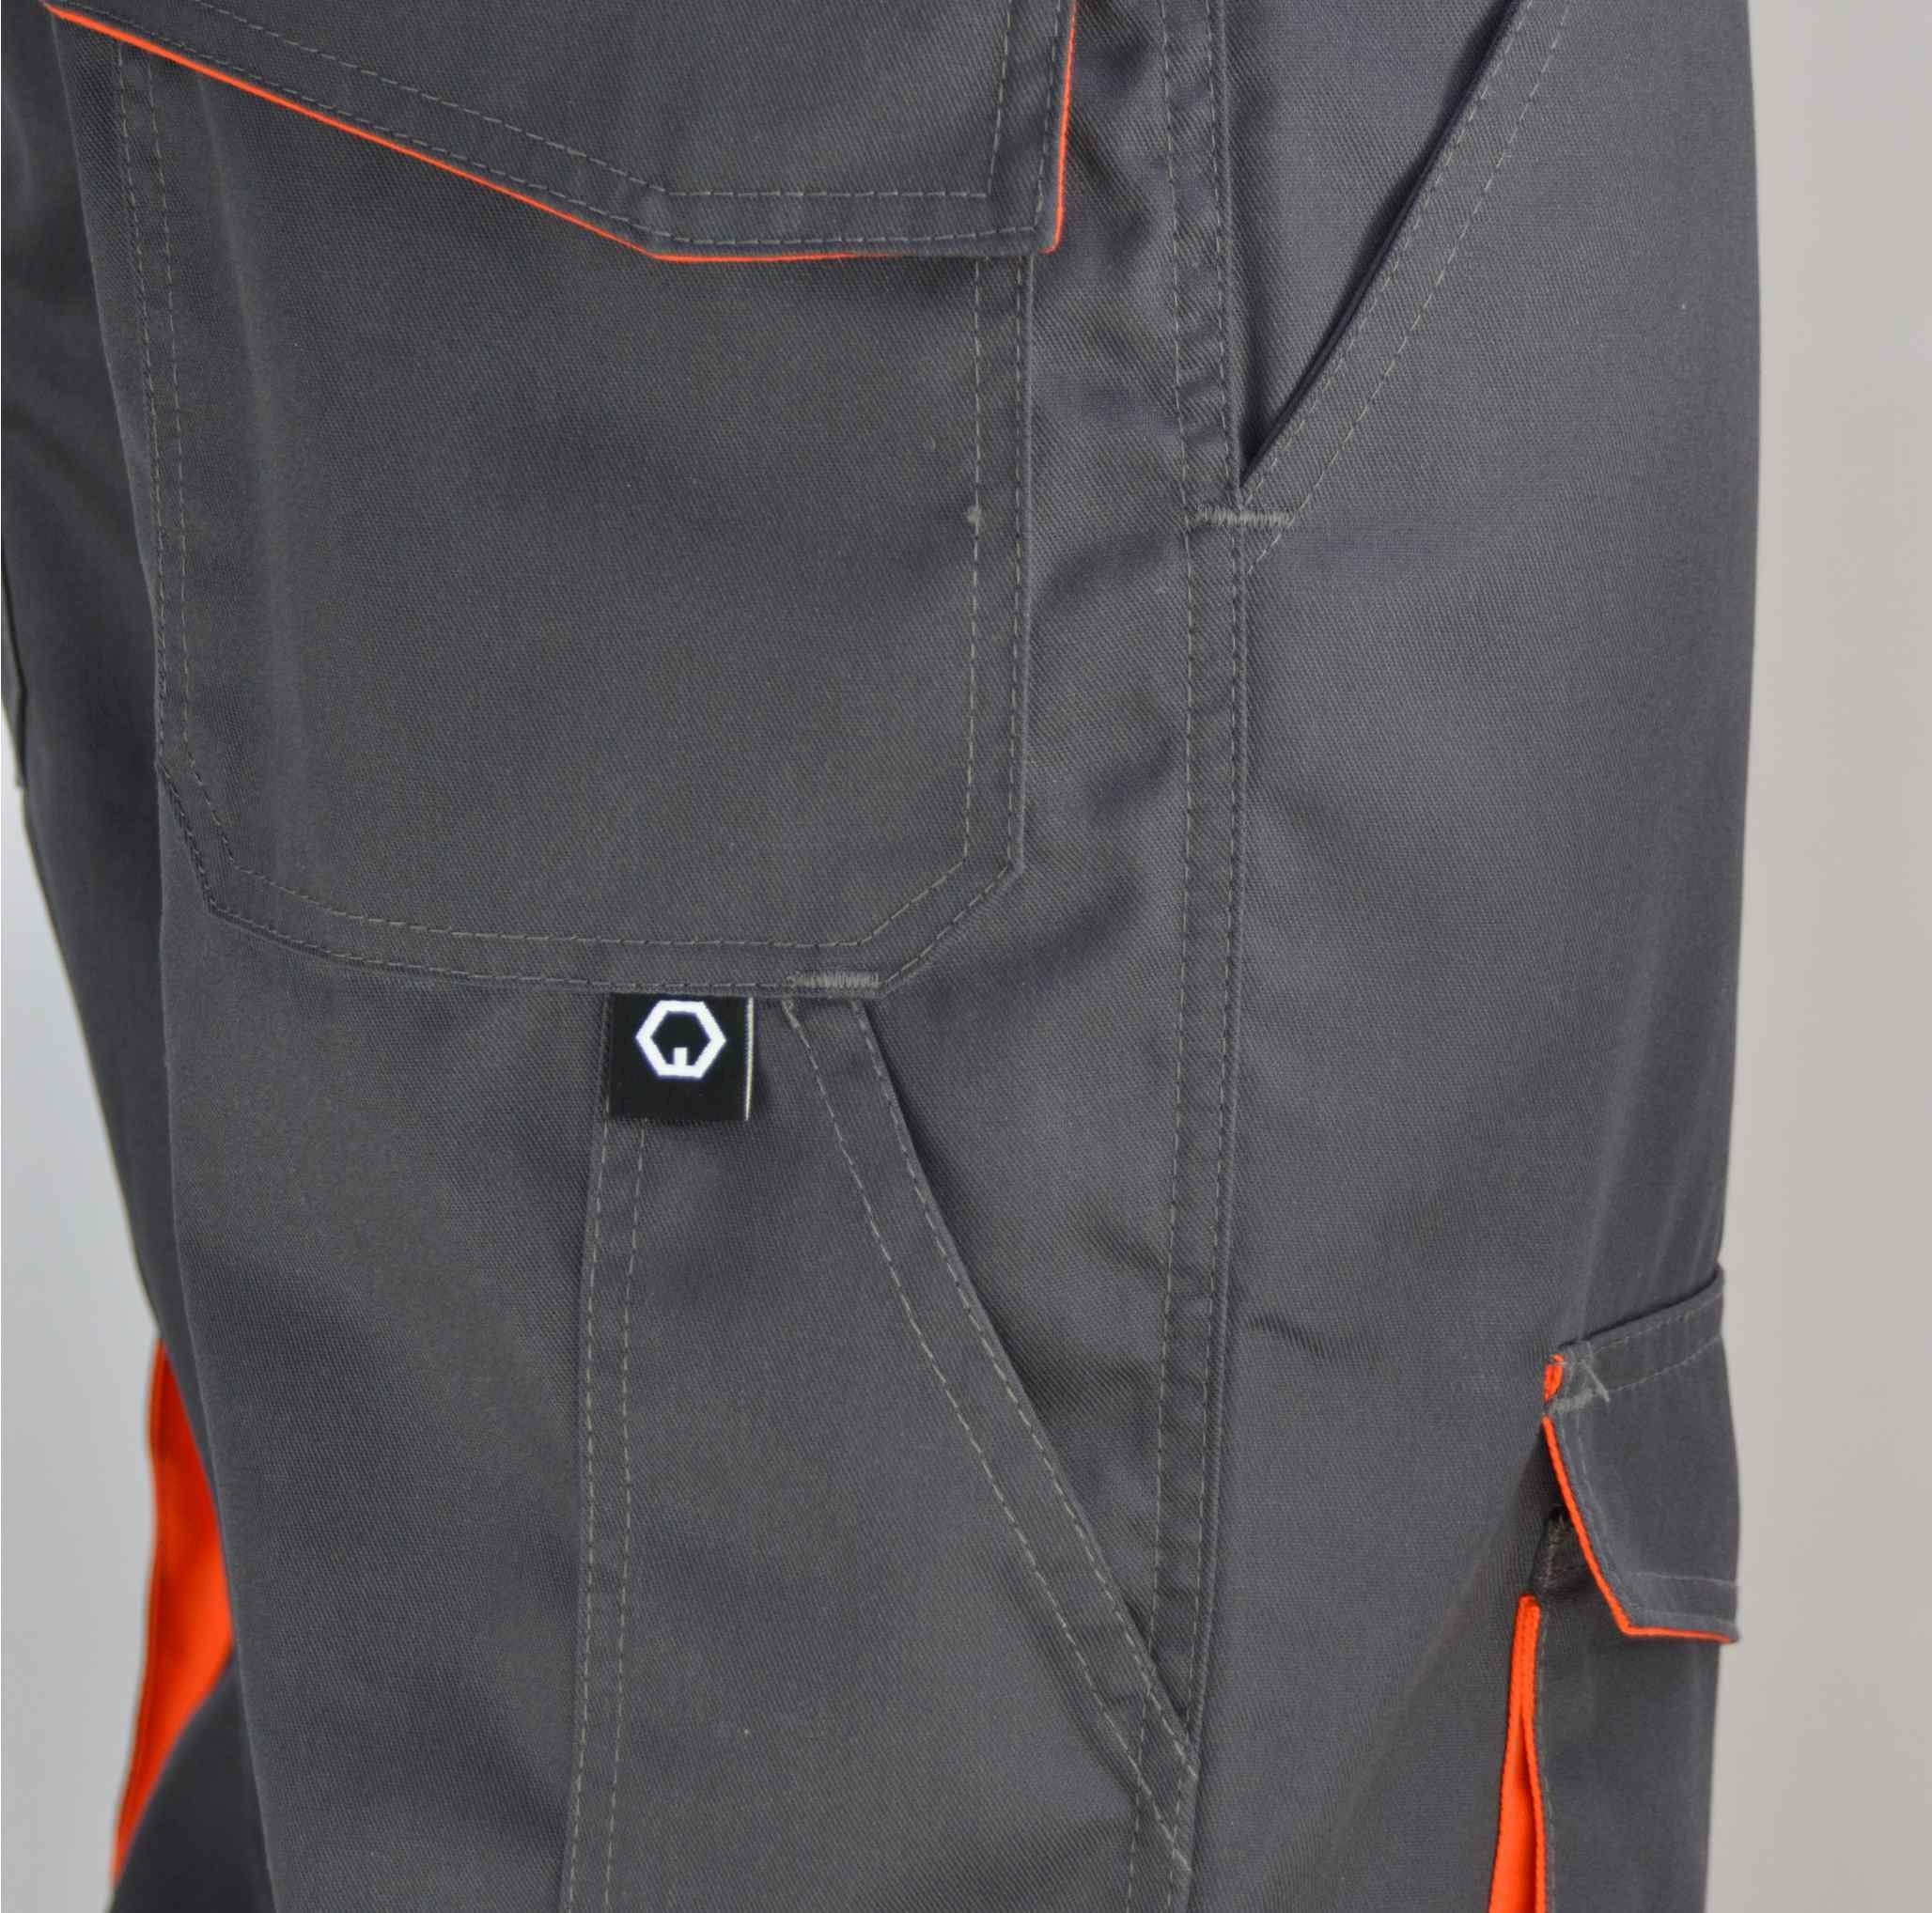 Stoffeinsätze elastische Grau/Orange workawear schwarz/grau 2 Cargohose Farbig Top Arbeitshose Qualität